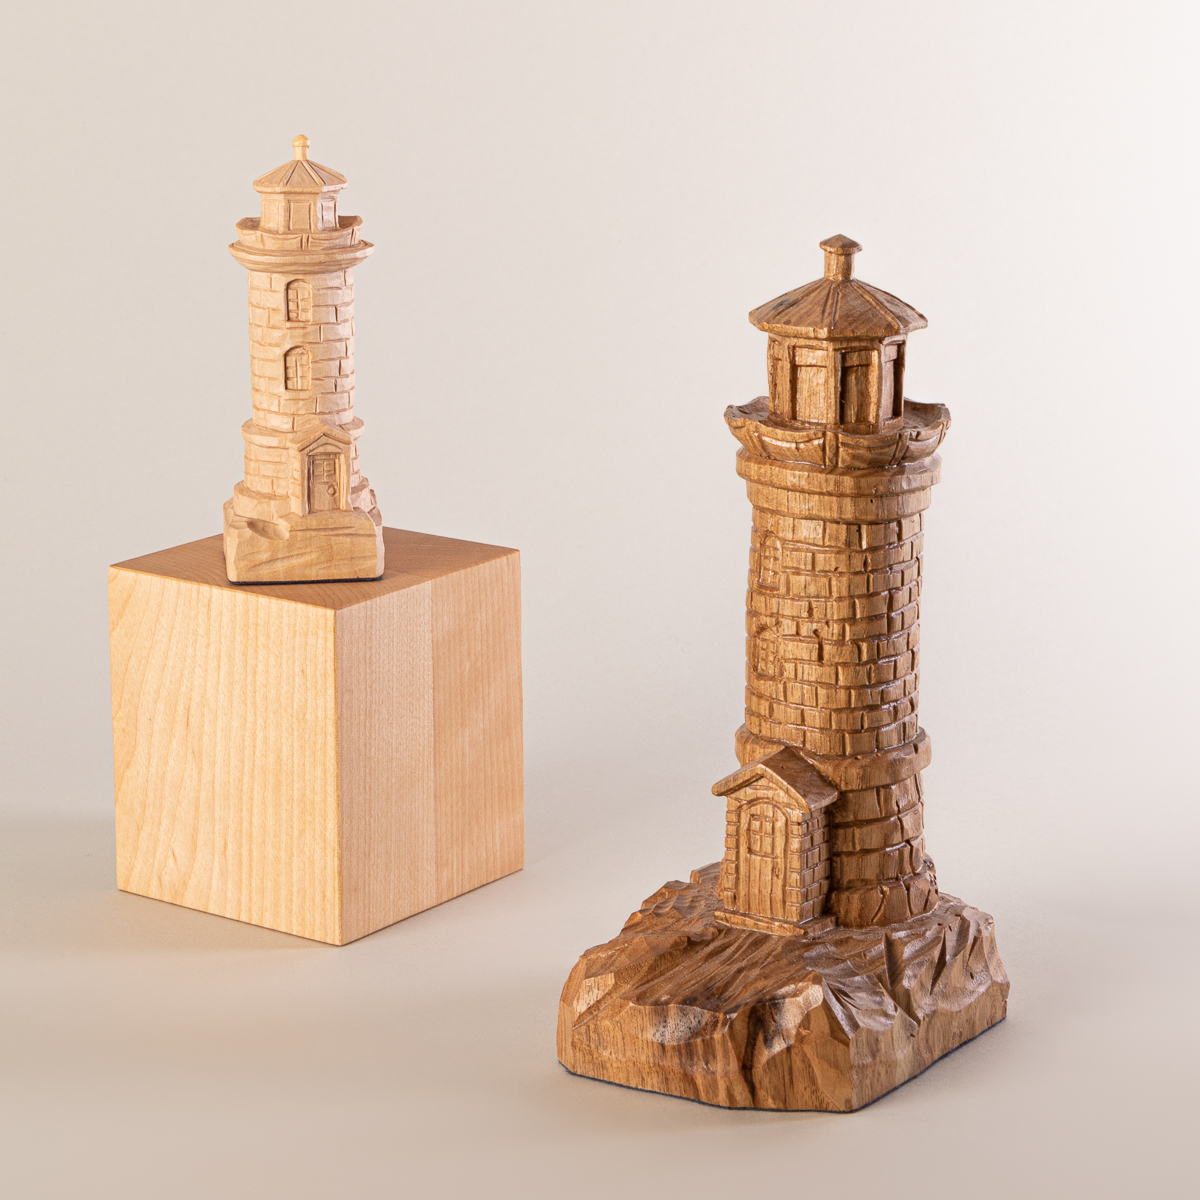 Réplique miniature en bois sculpté à la main du phare du pilier de Saint-Jean-Port-Joli